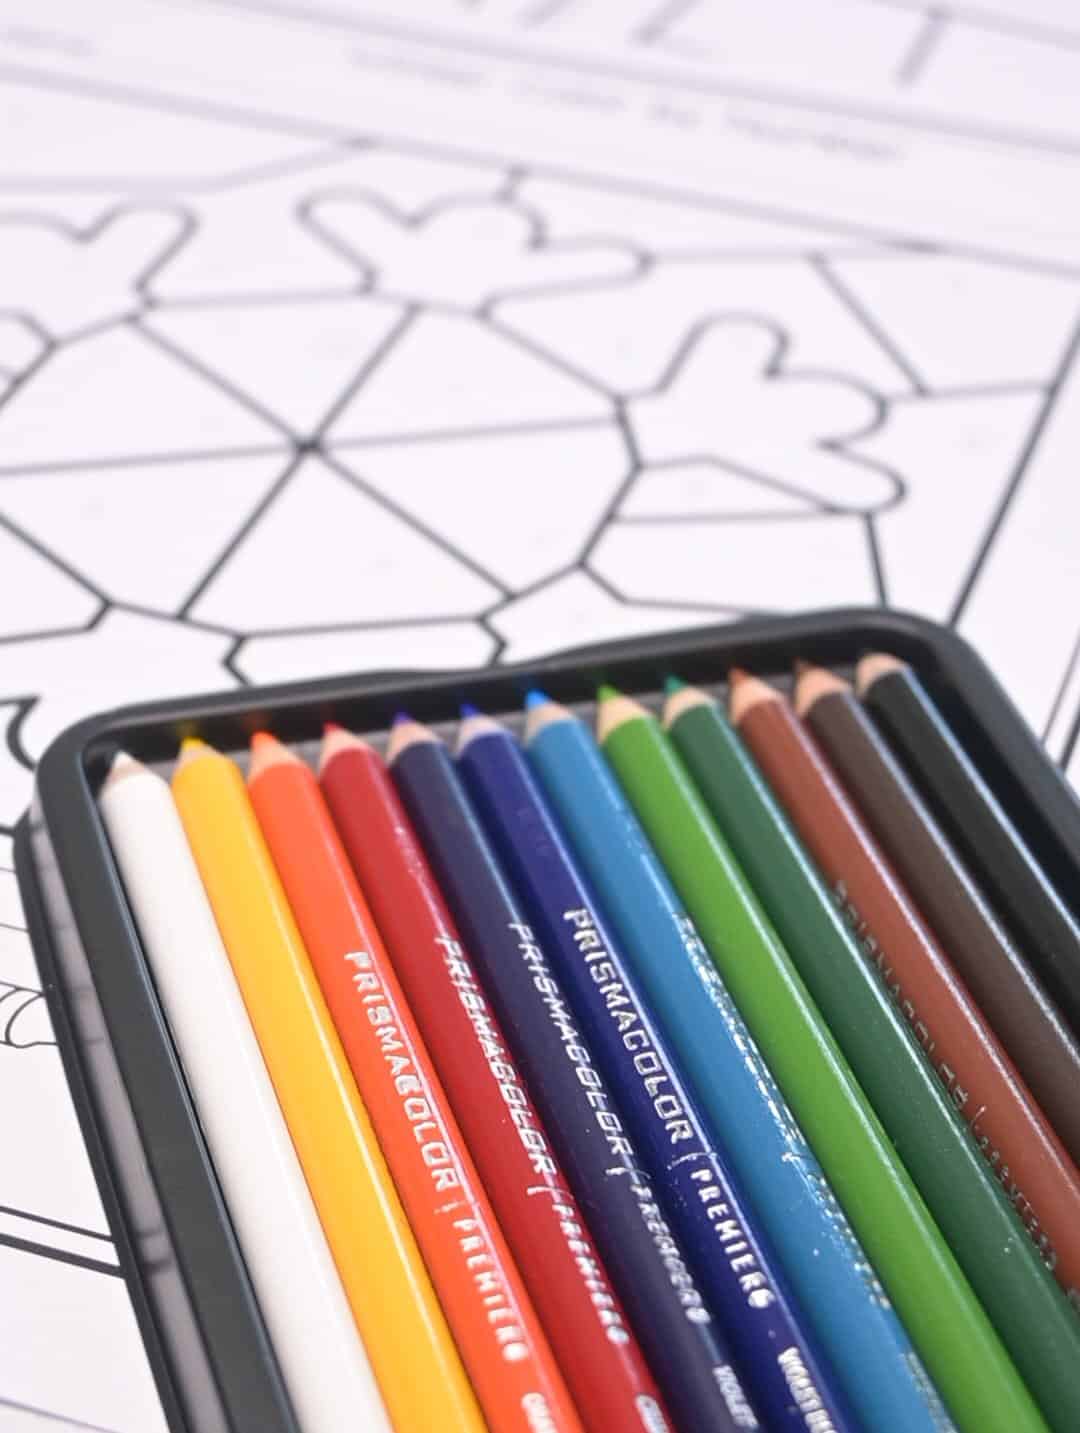 A picture of Prismacolor pencils